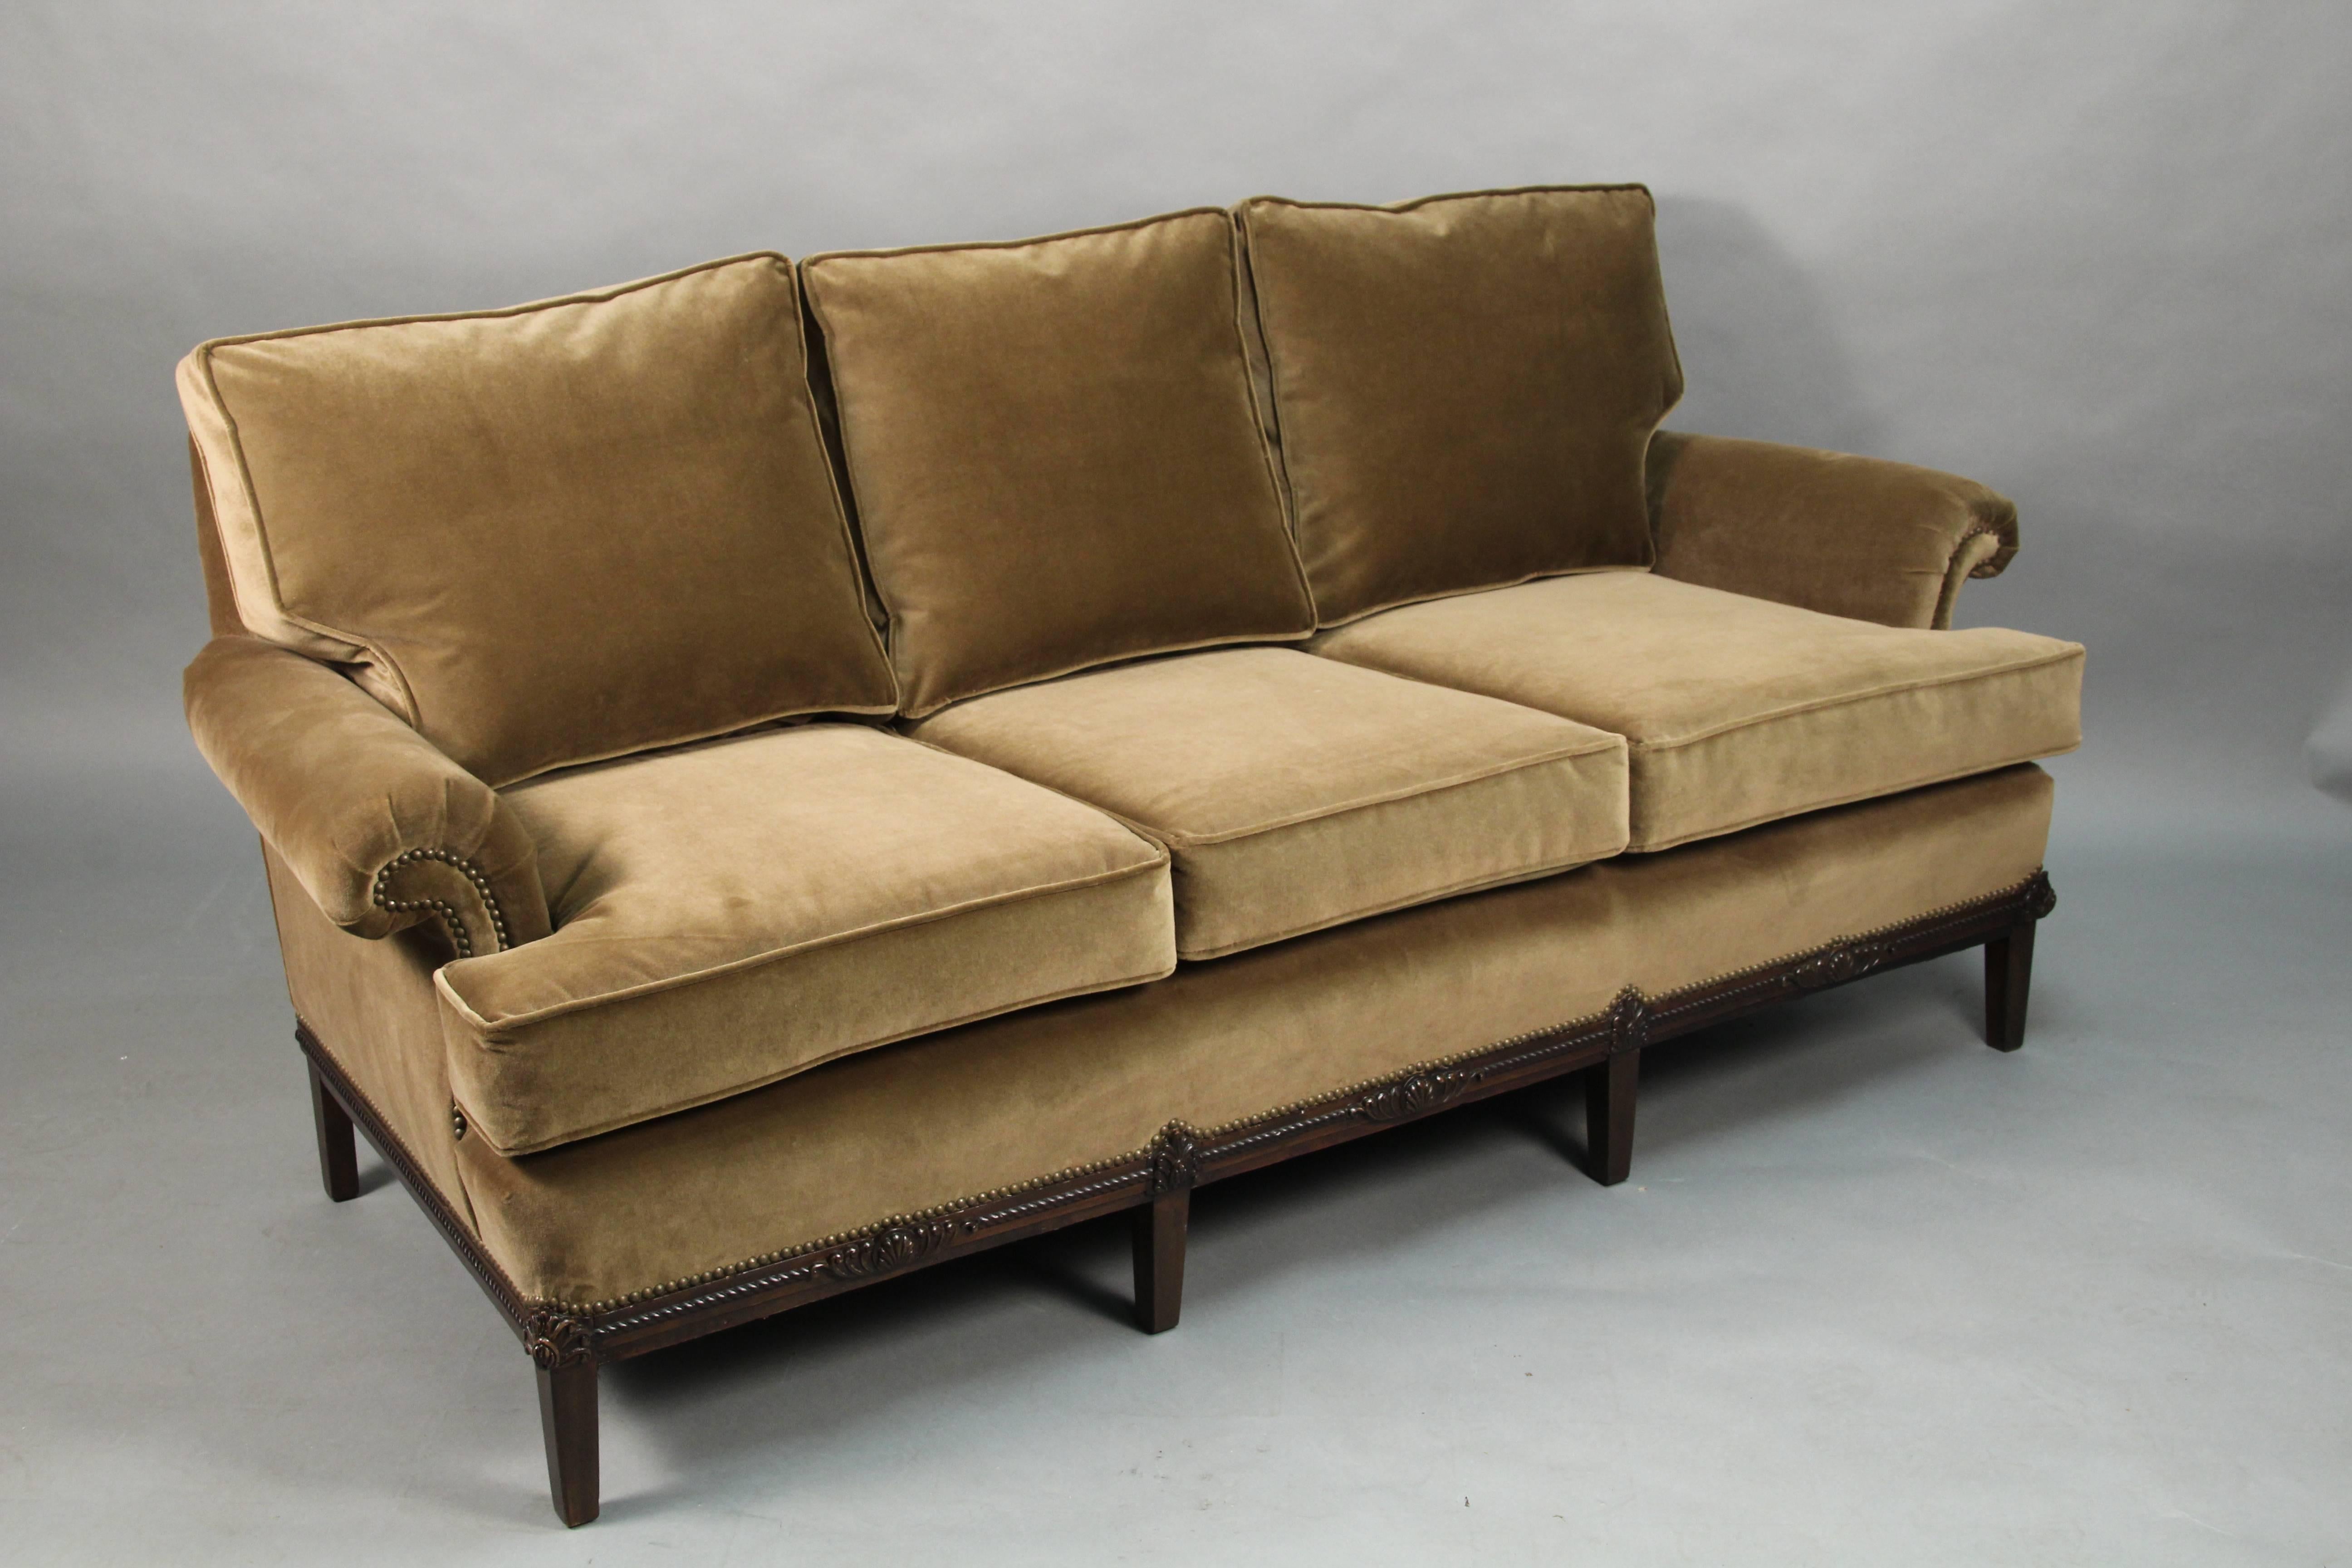 Elegant 1920s sofa with new upholstery. Cotton velvet upholstery.